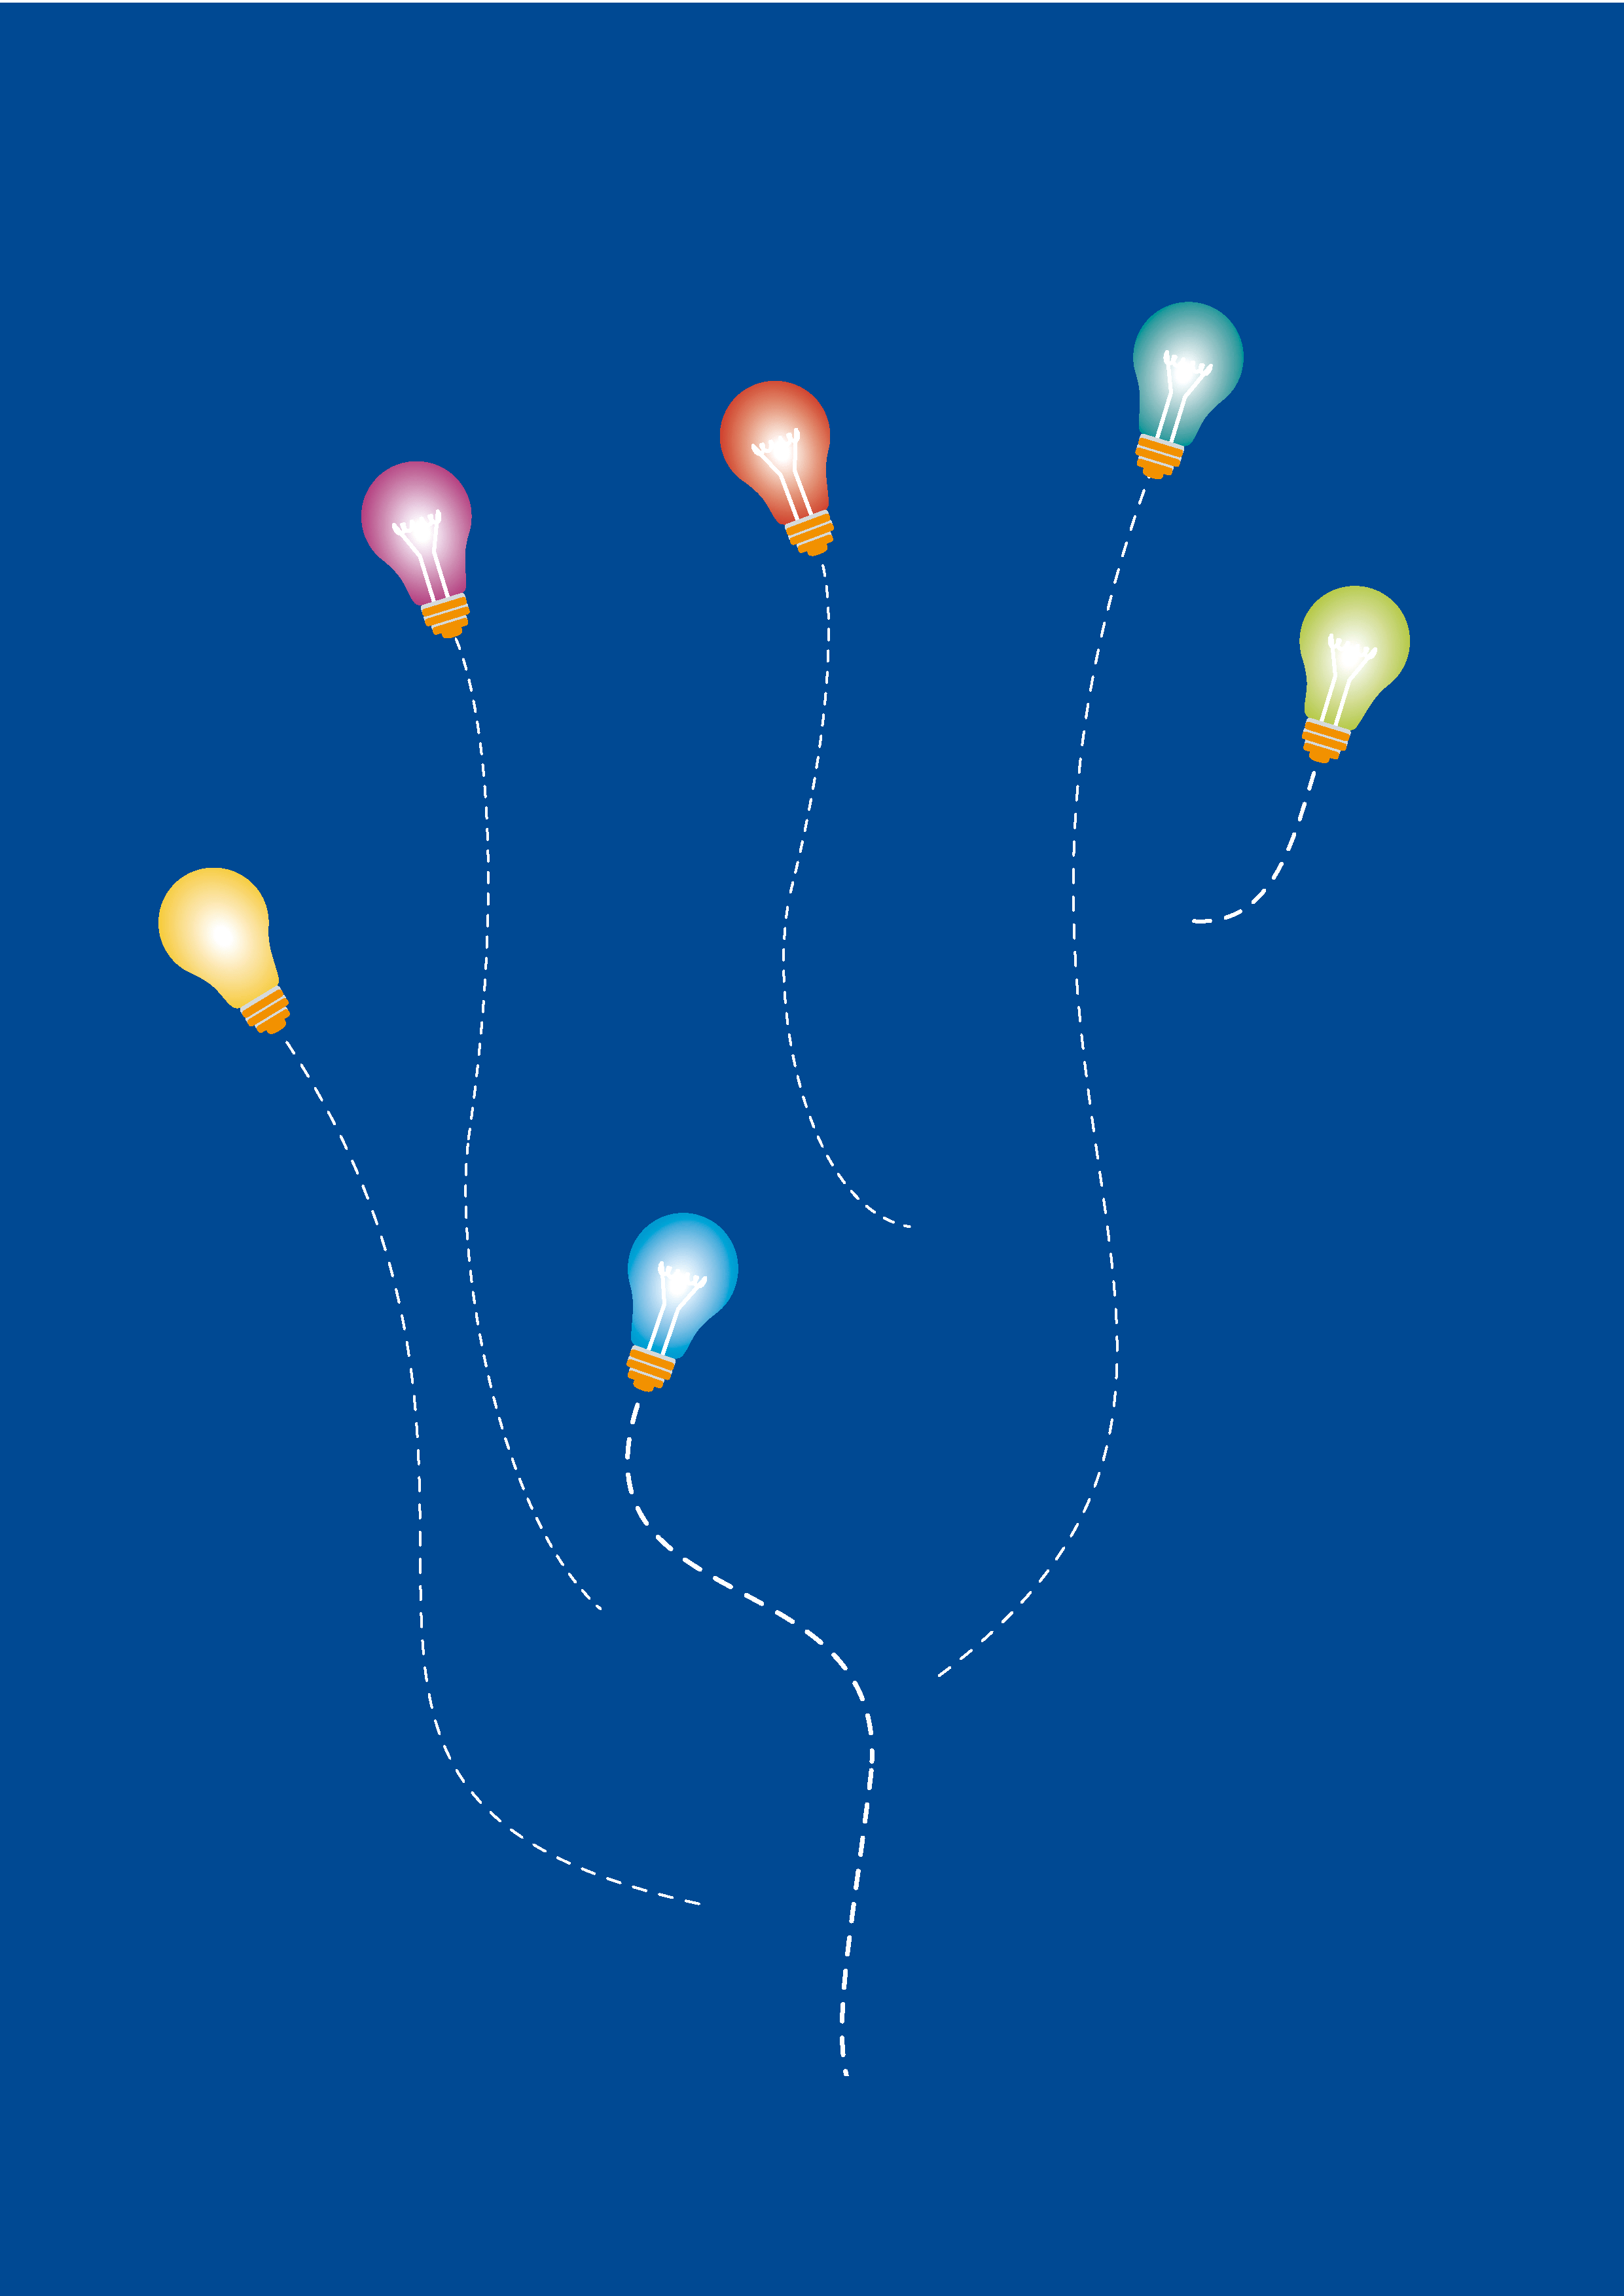 Editorial Illustration | MINT-Fächer: Sechs farblich abgestimmte Glühlampen streben in die Höhe und strahlen um die Wette. Sie illustrieren die Wettbewerbe in MINT-Fächern (Mathematik, Informatik, Naturwissenschaften und Technik), wo sich die hellsten Köpfe messen können.